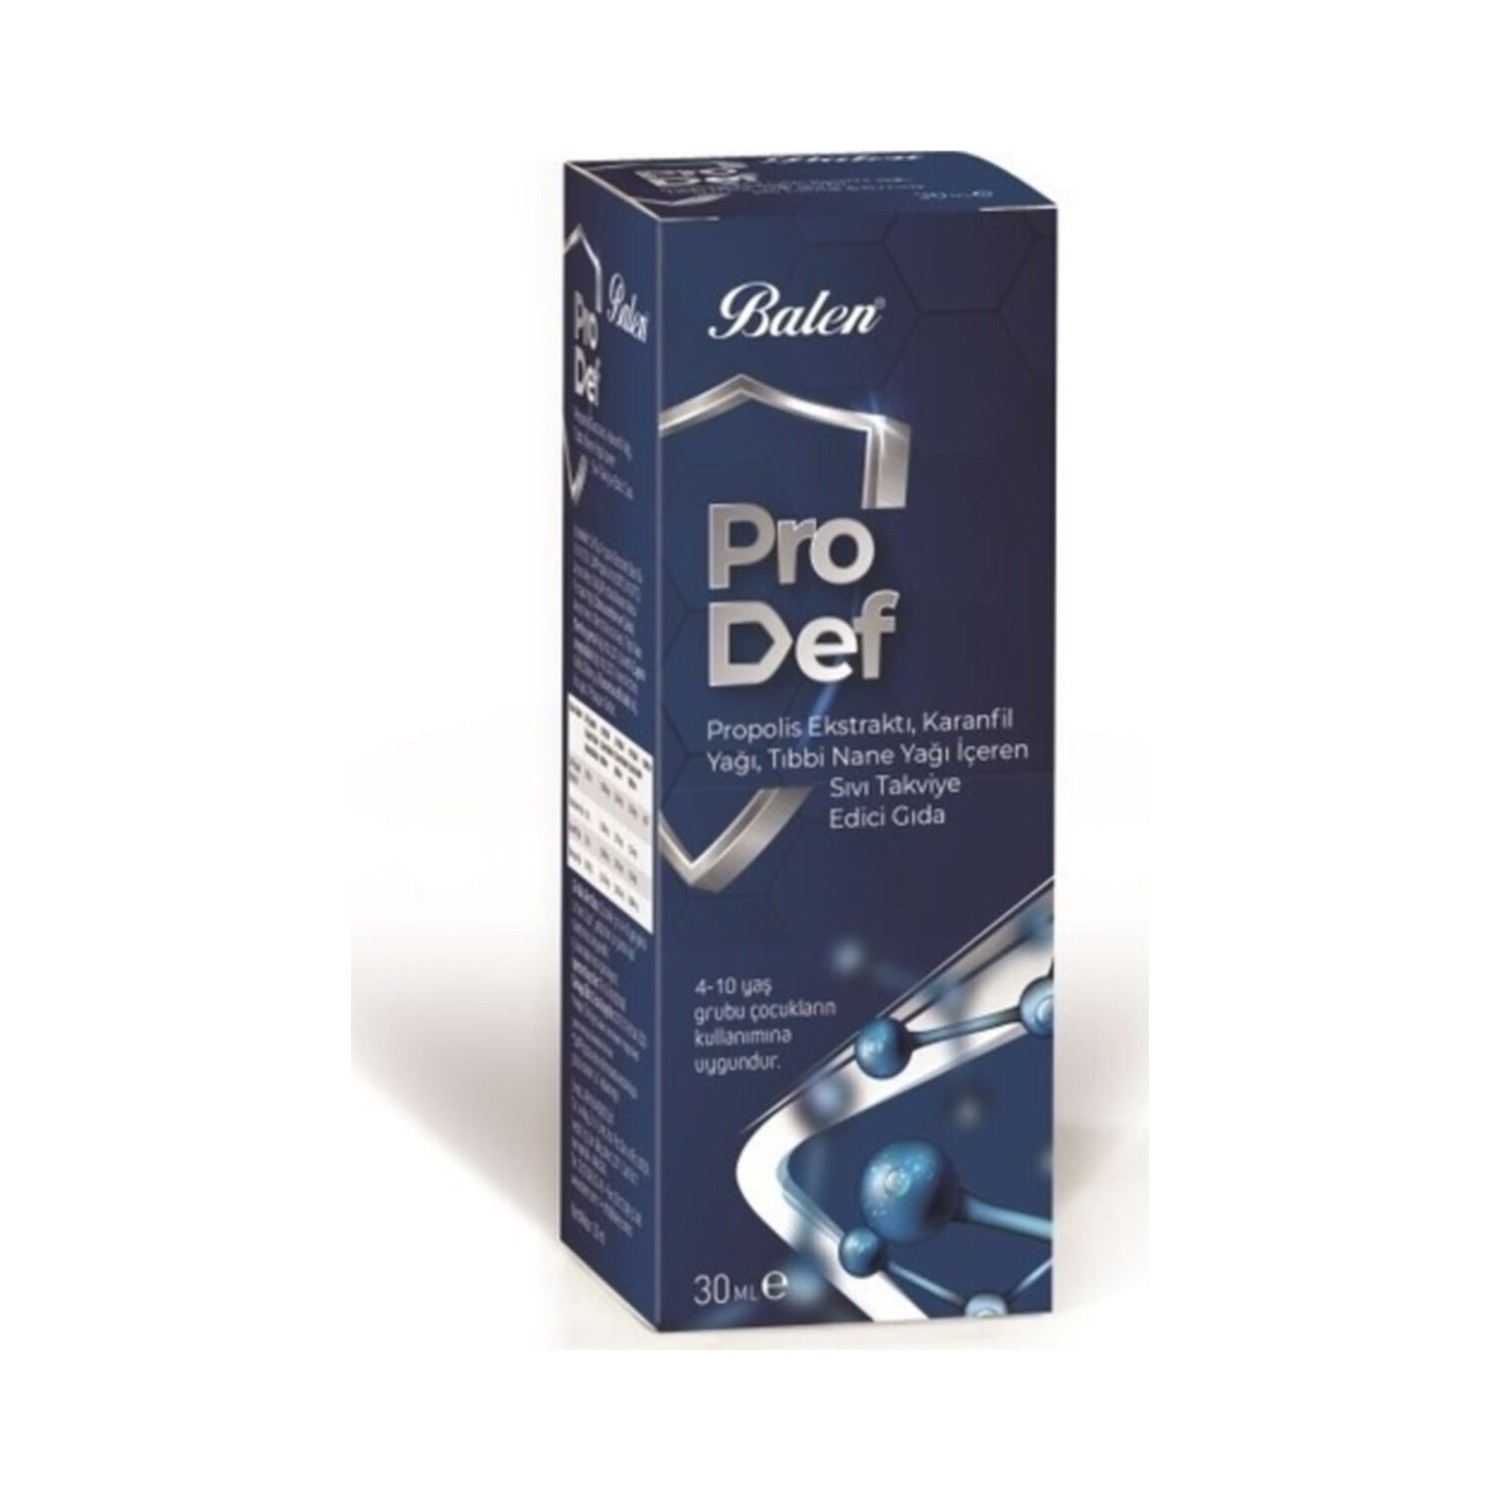 цена Спрей для горла Prodef с прополисом и маслом гвоздики, 3 упаковки по 30 мл